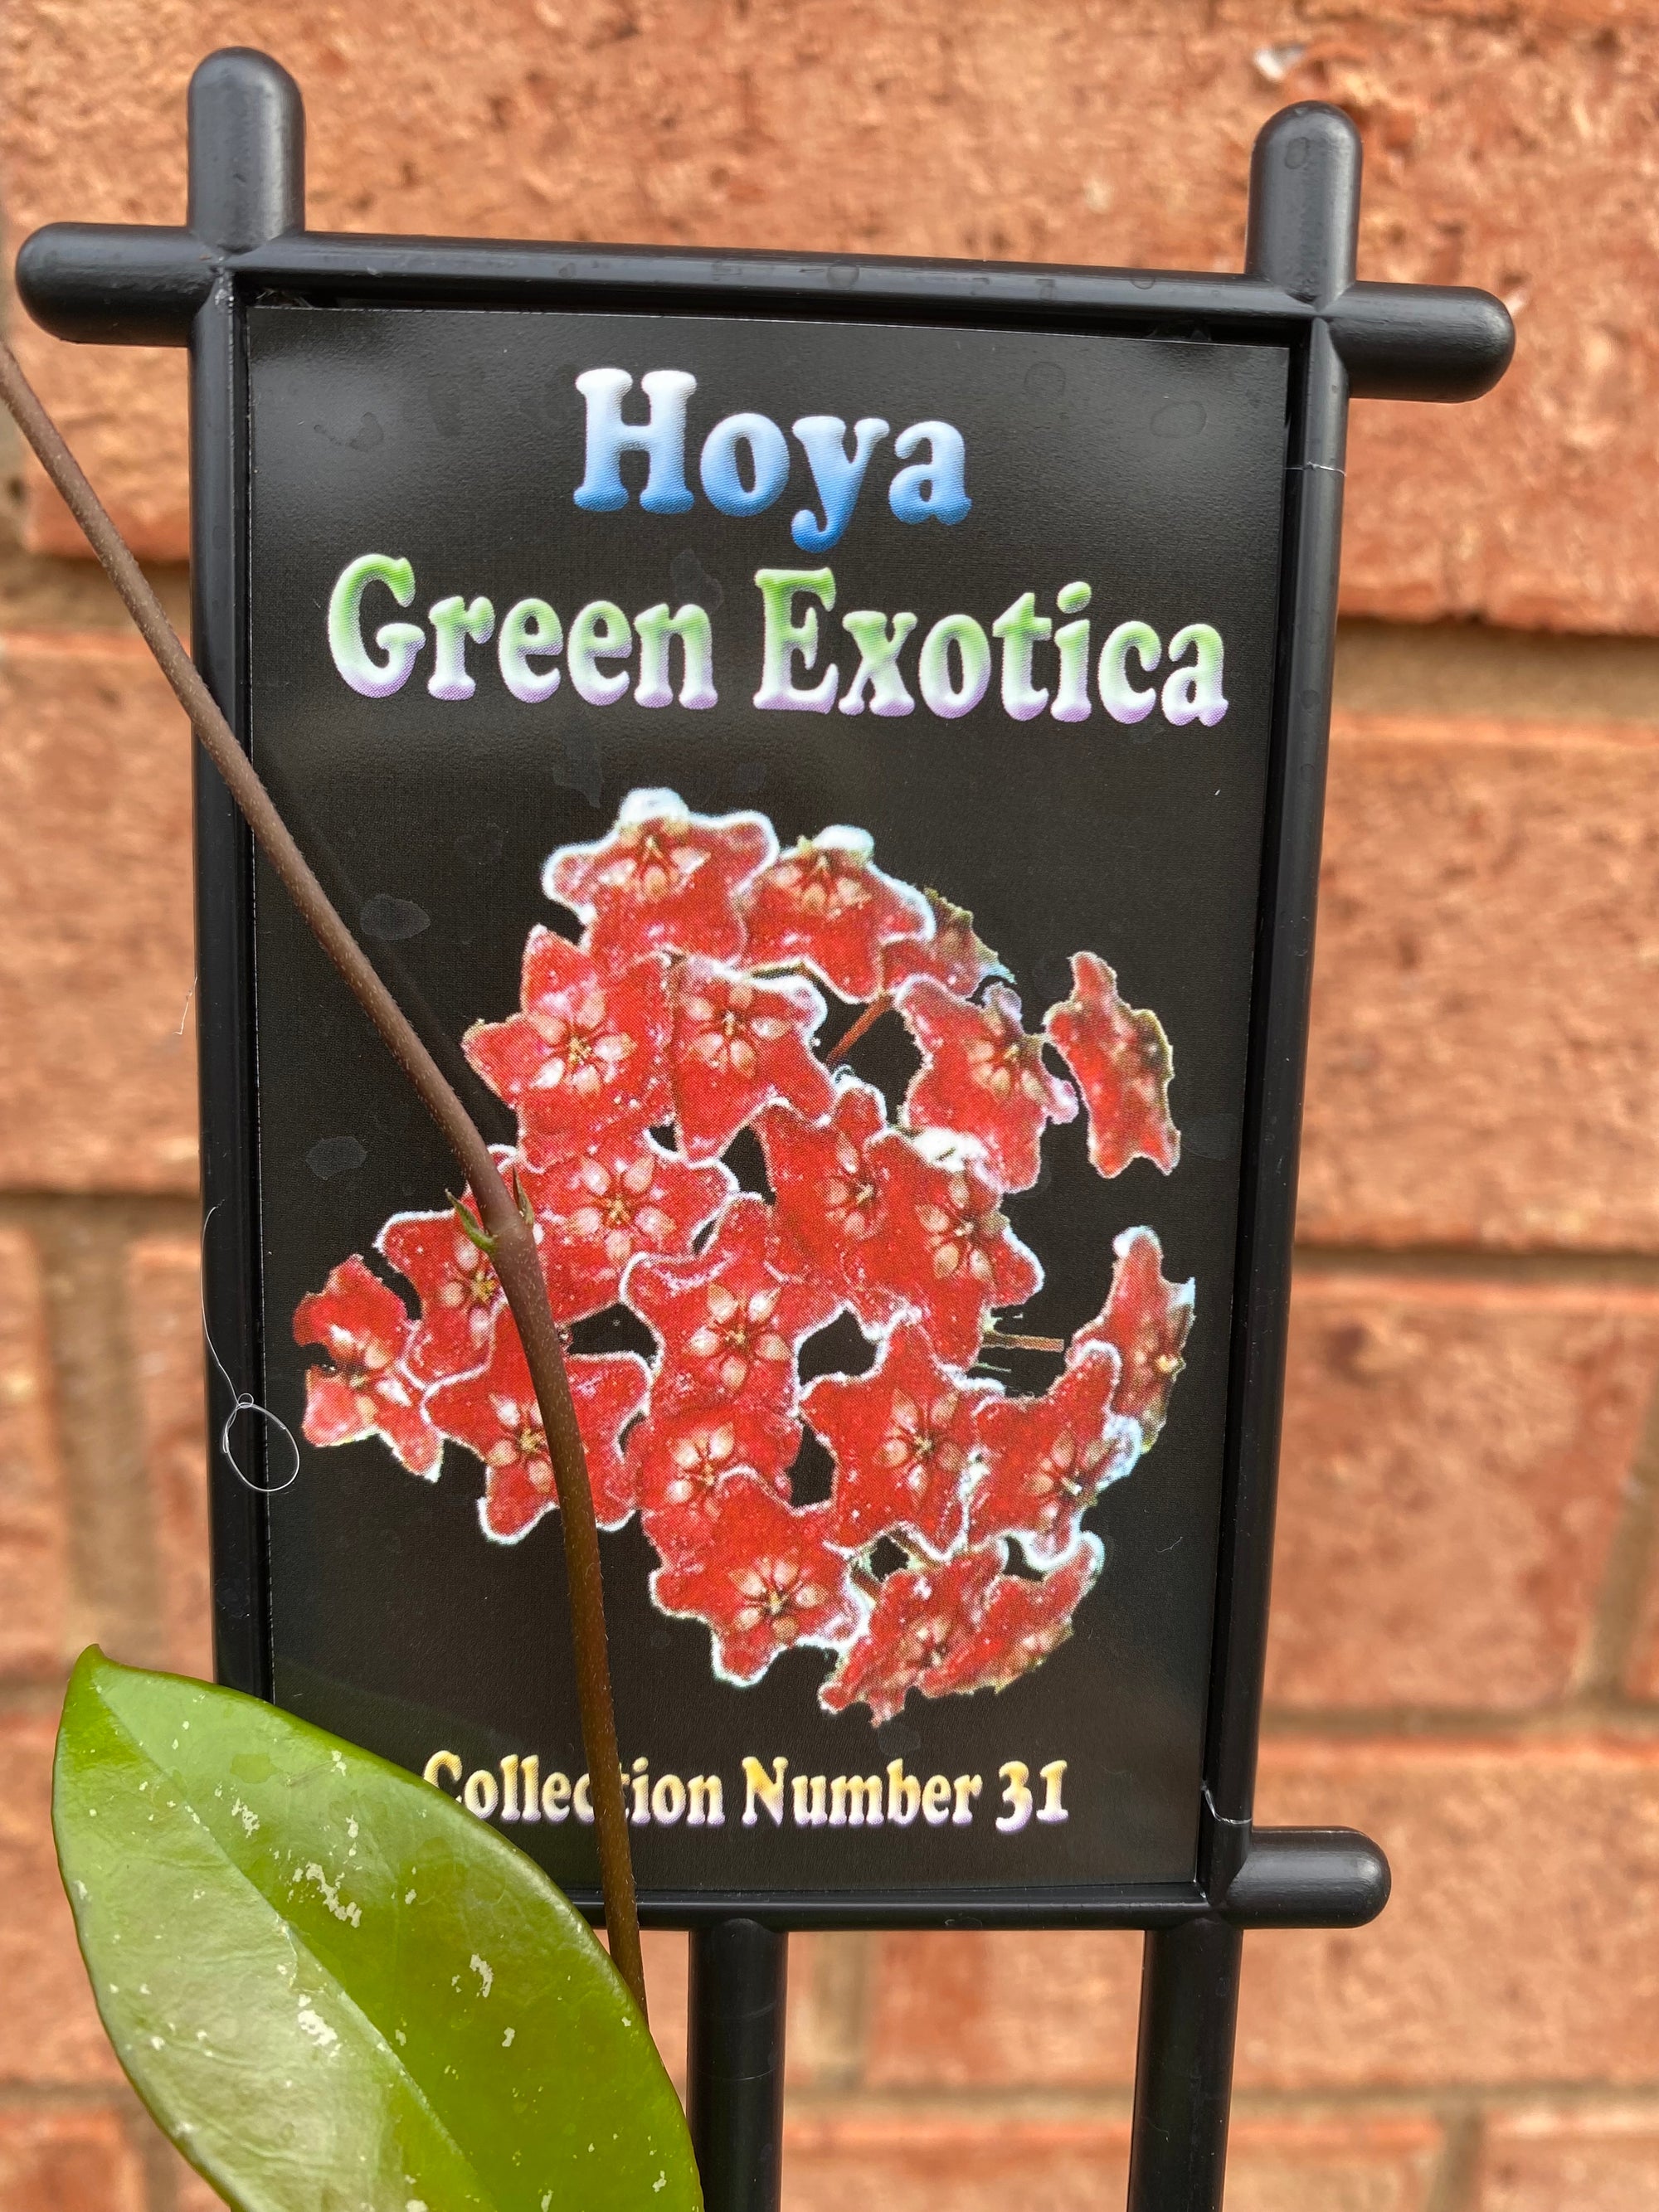 Hoya - Green Exotica Collection No. 31